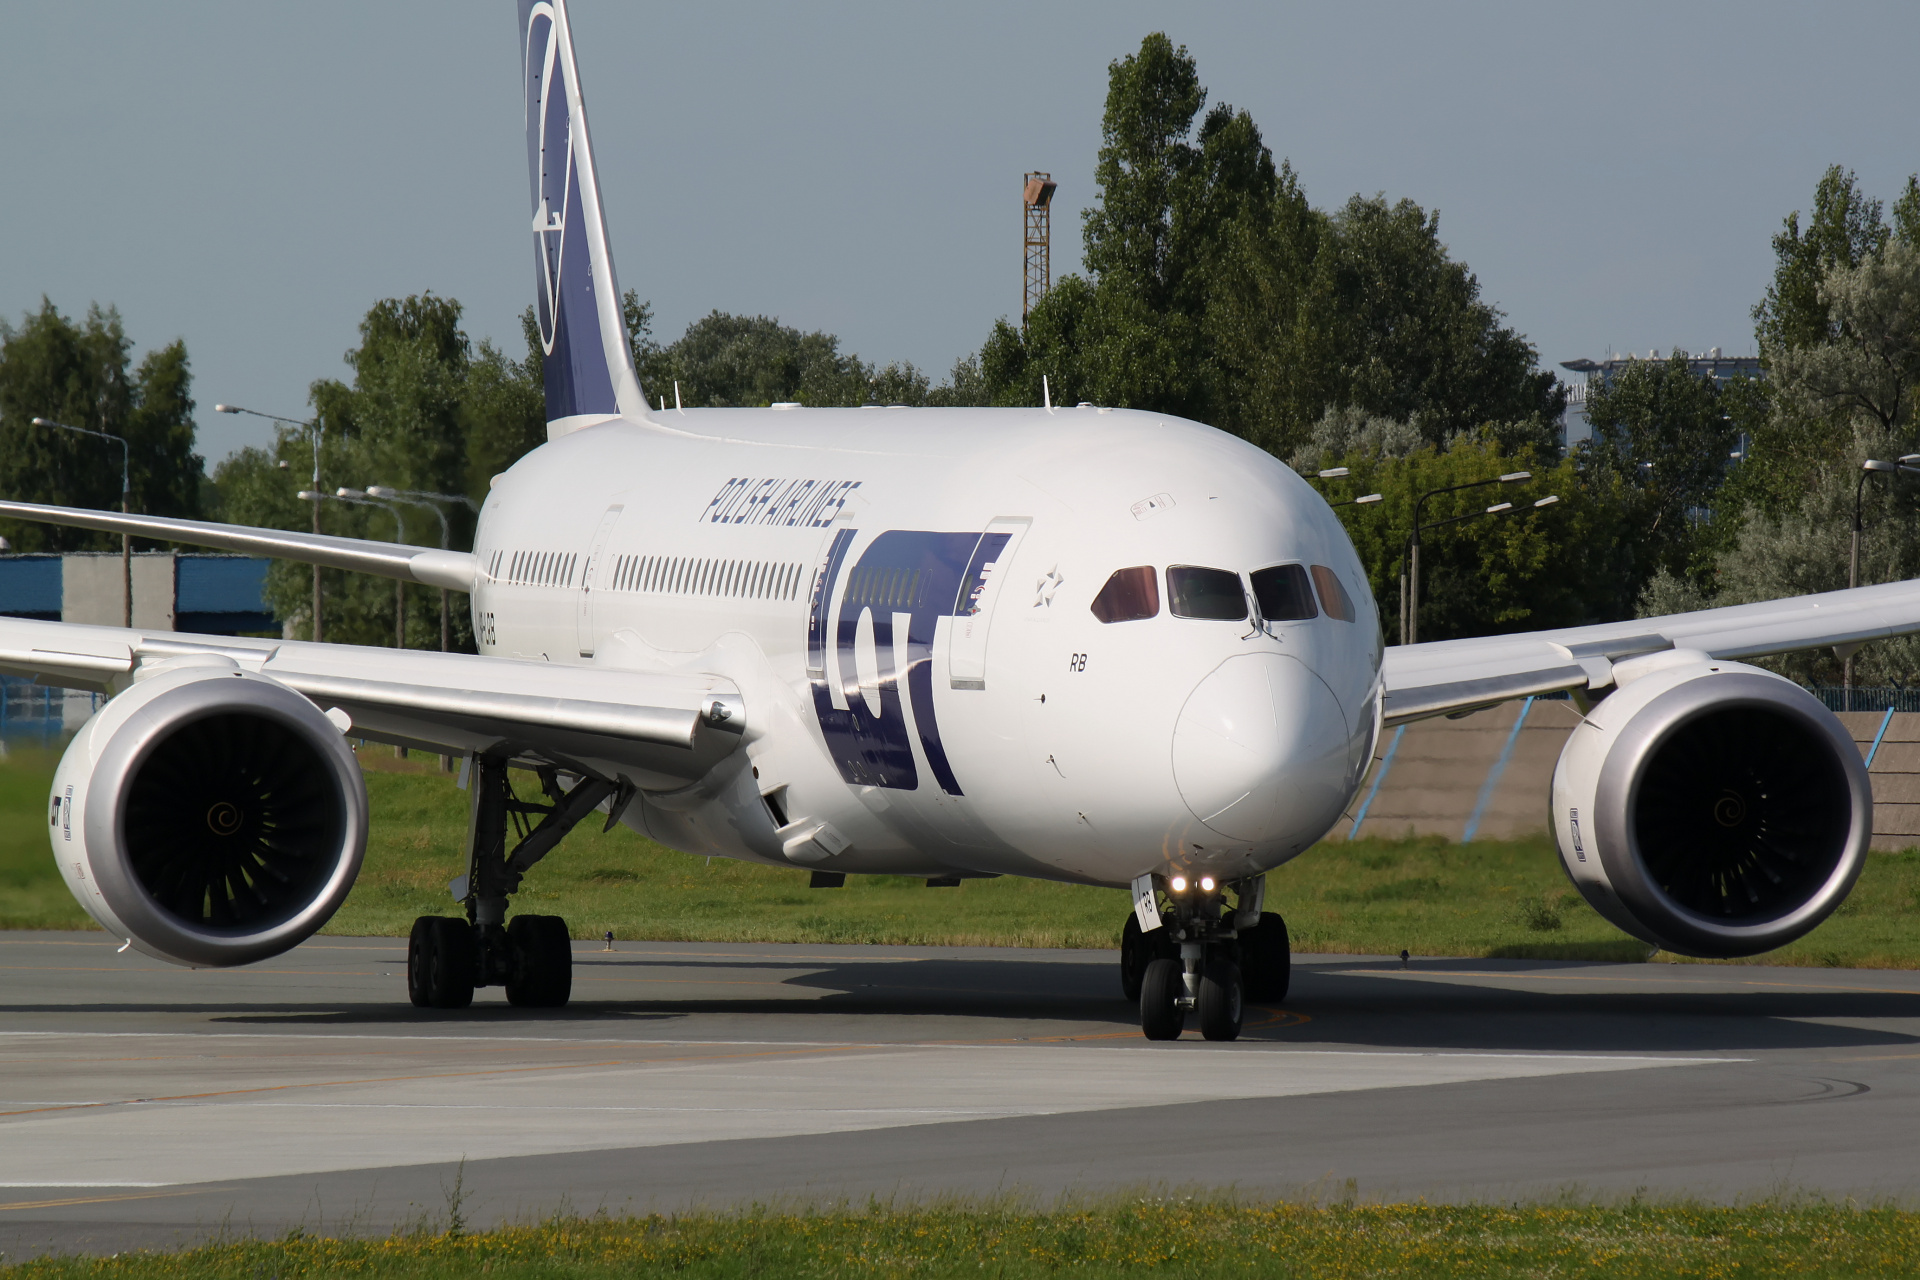 SP-LRB (Samoloty » Spotting na EPWA » Boeing 787-8 Dreamliner » Polskie Linie Lotnicze LOT)